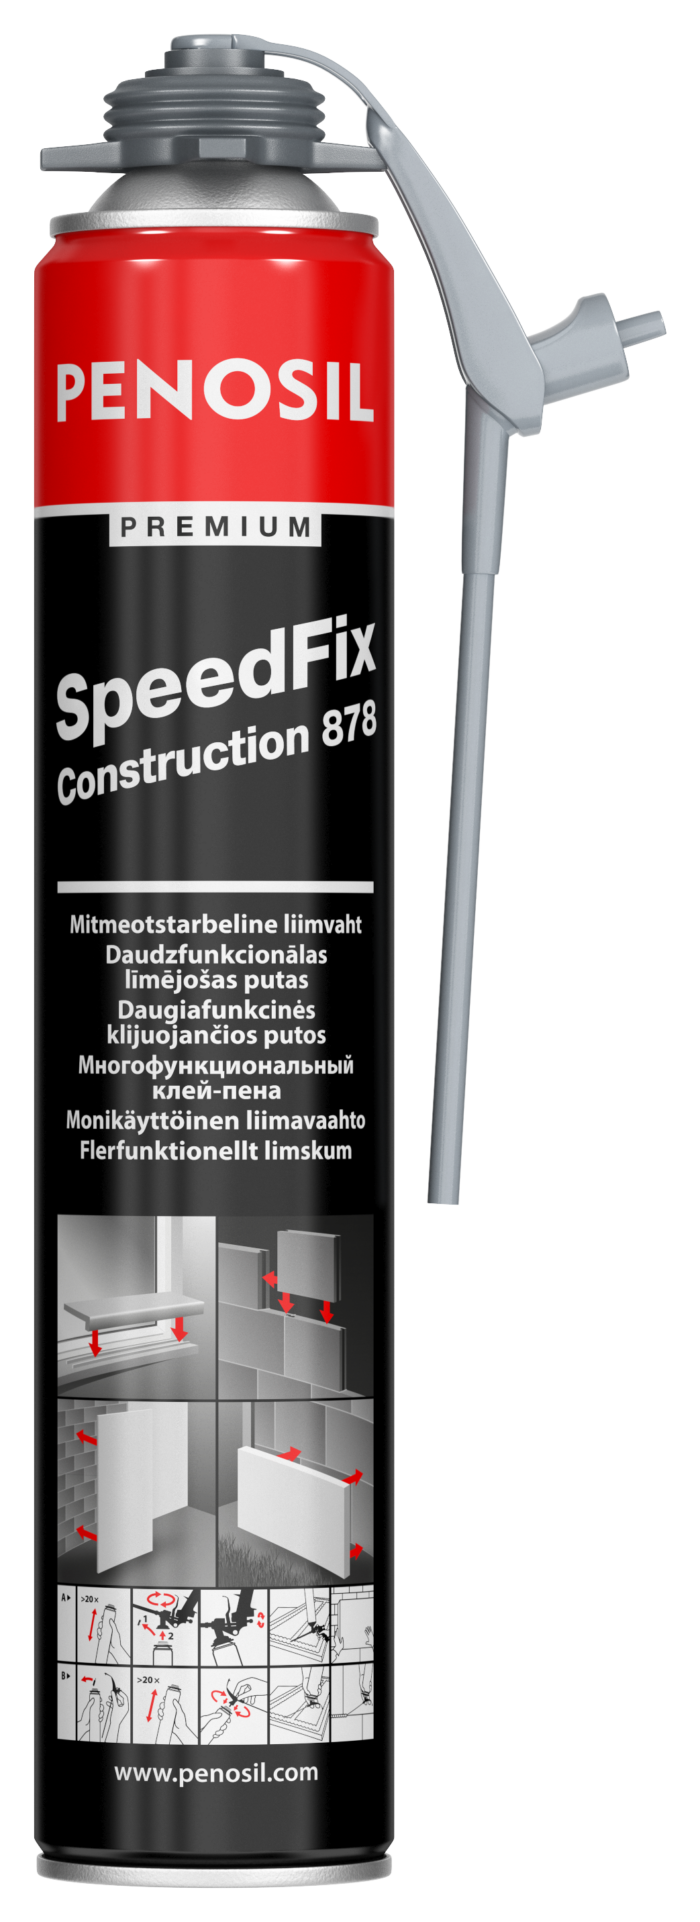 Penosil Premium SpeedFix Construction 878 līmējošās putas